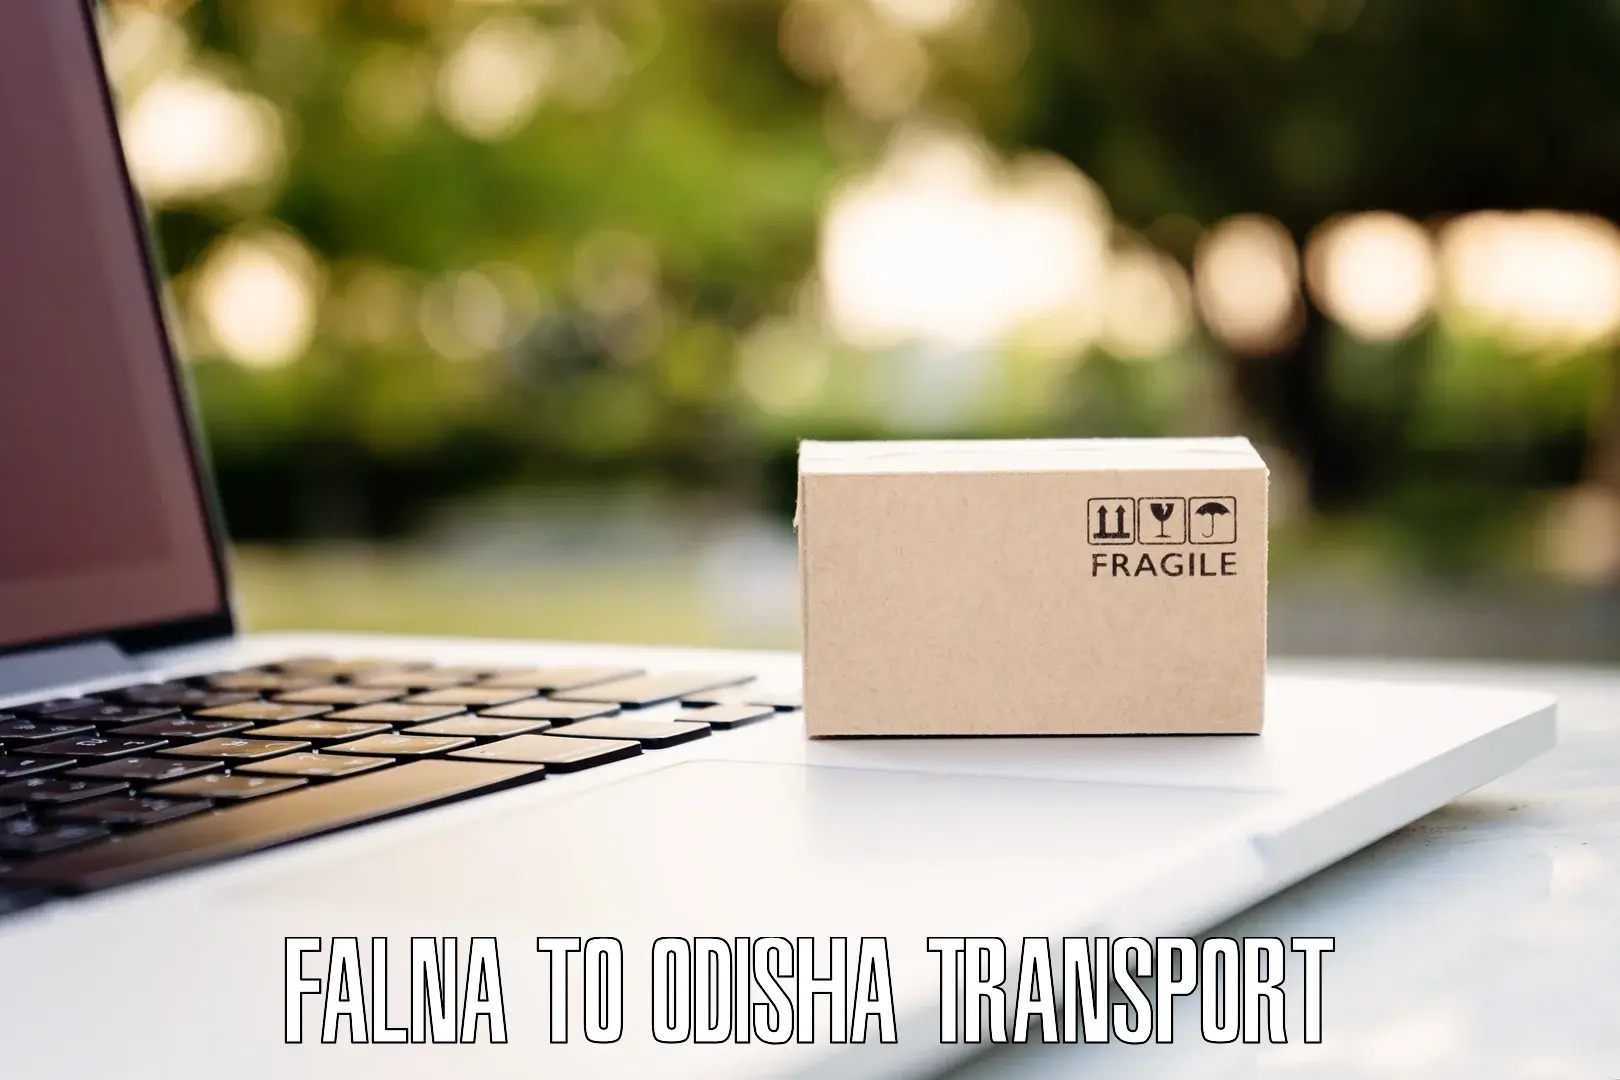 Land transport services Falna to Raikia